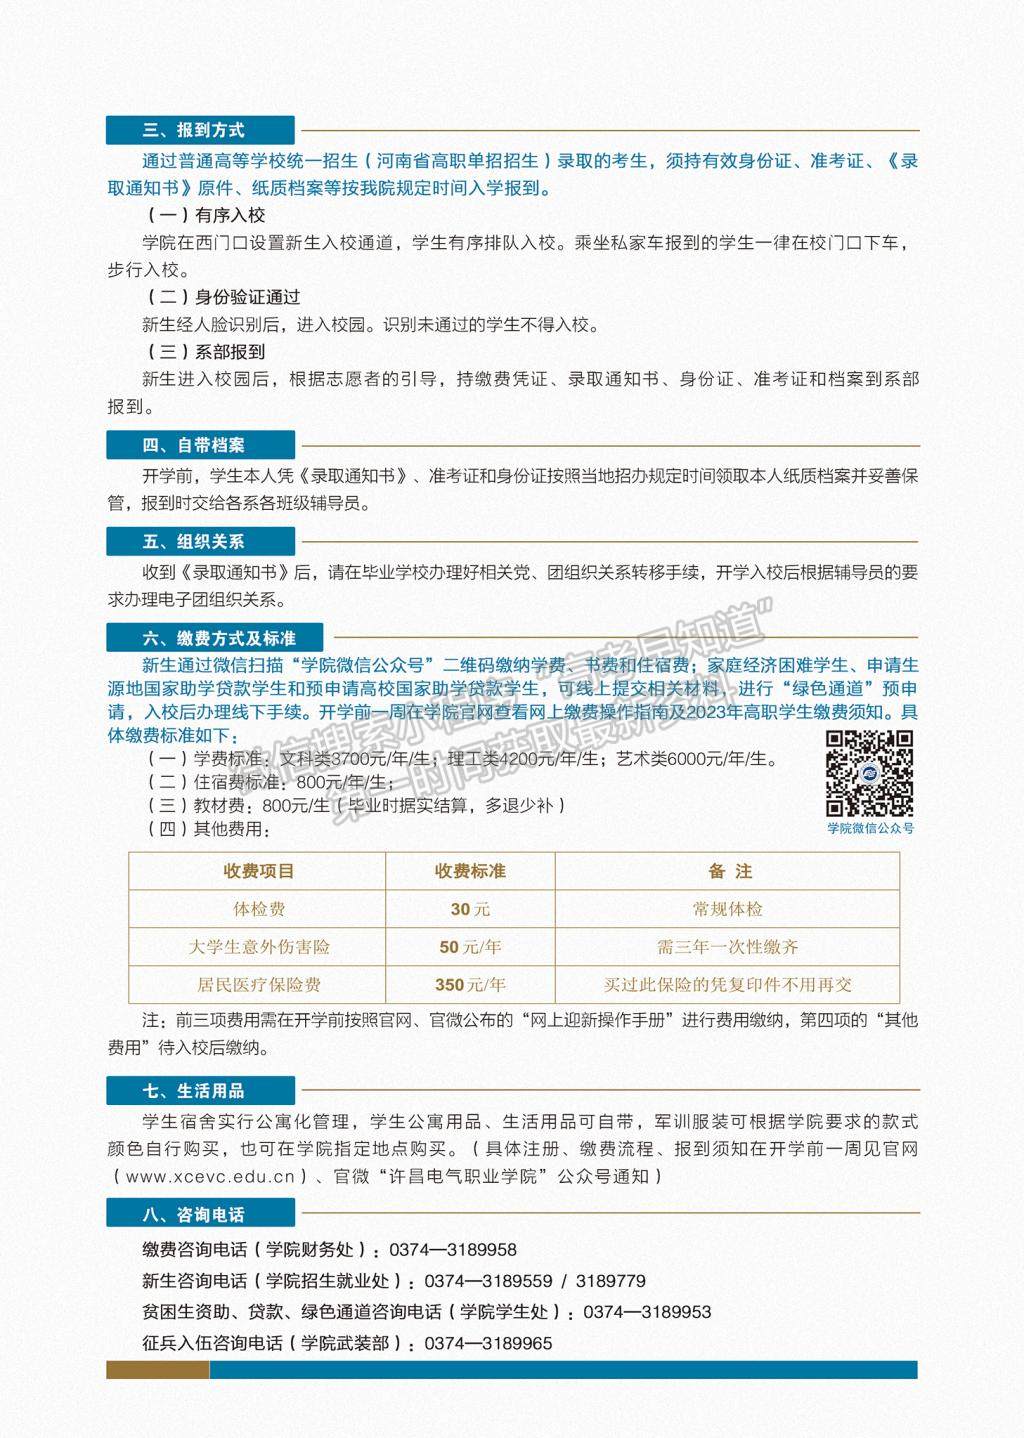 许昌电气职业学院2023年新生入学须知